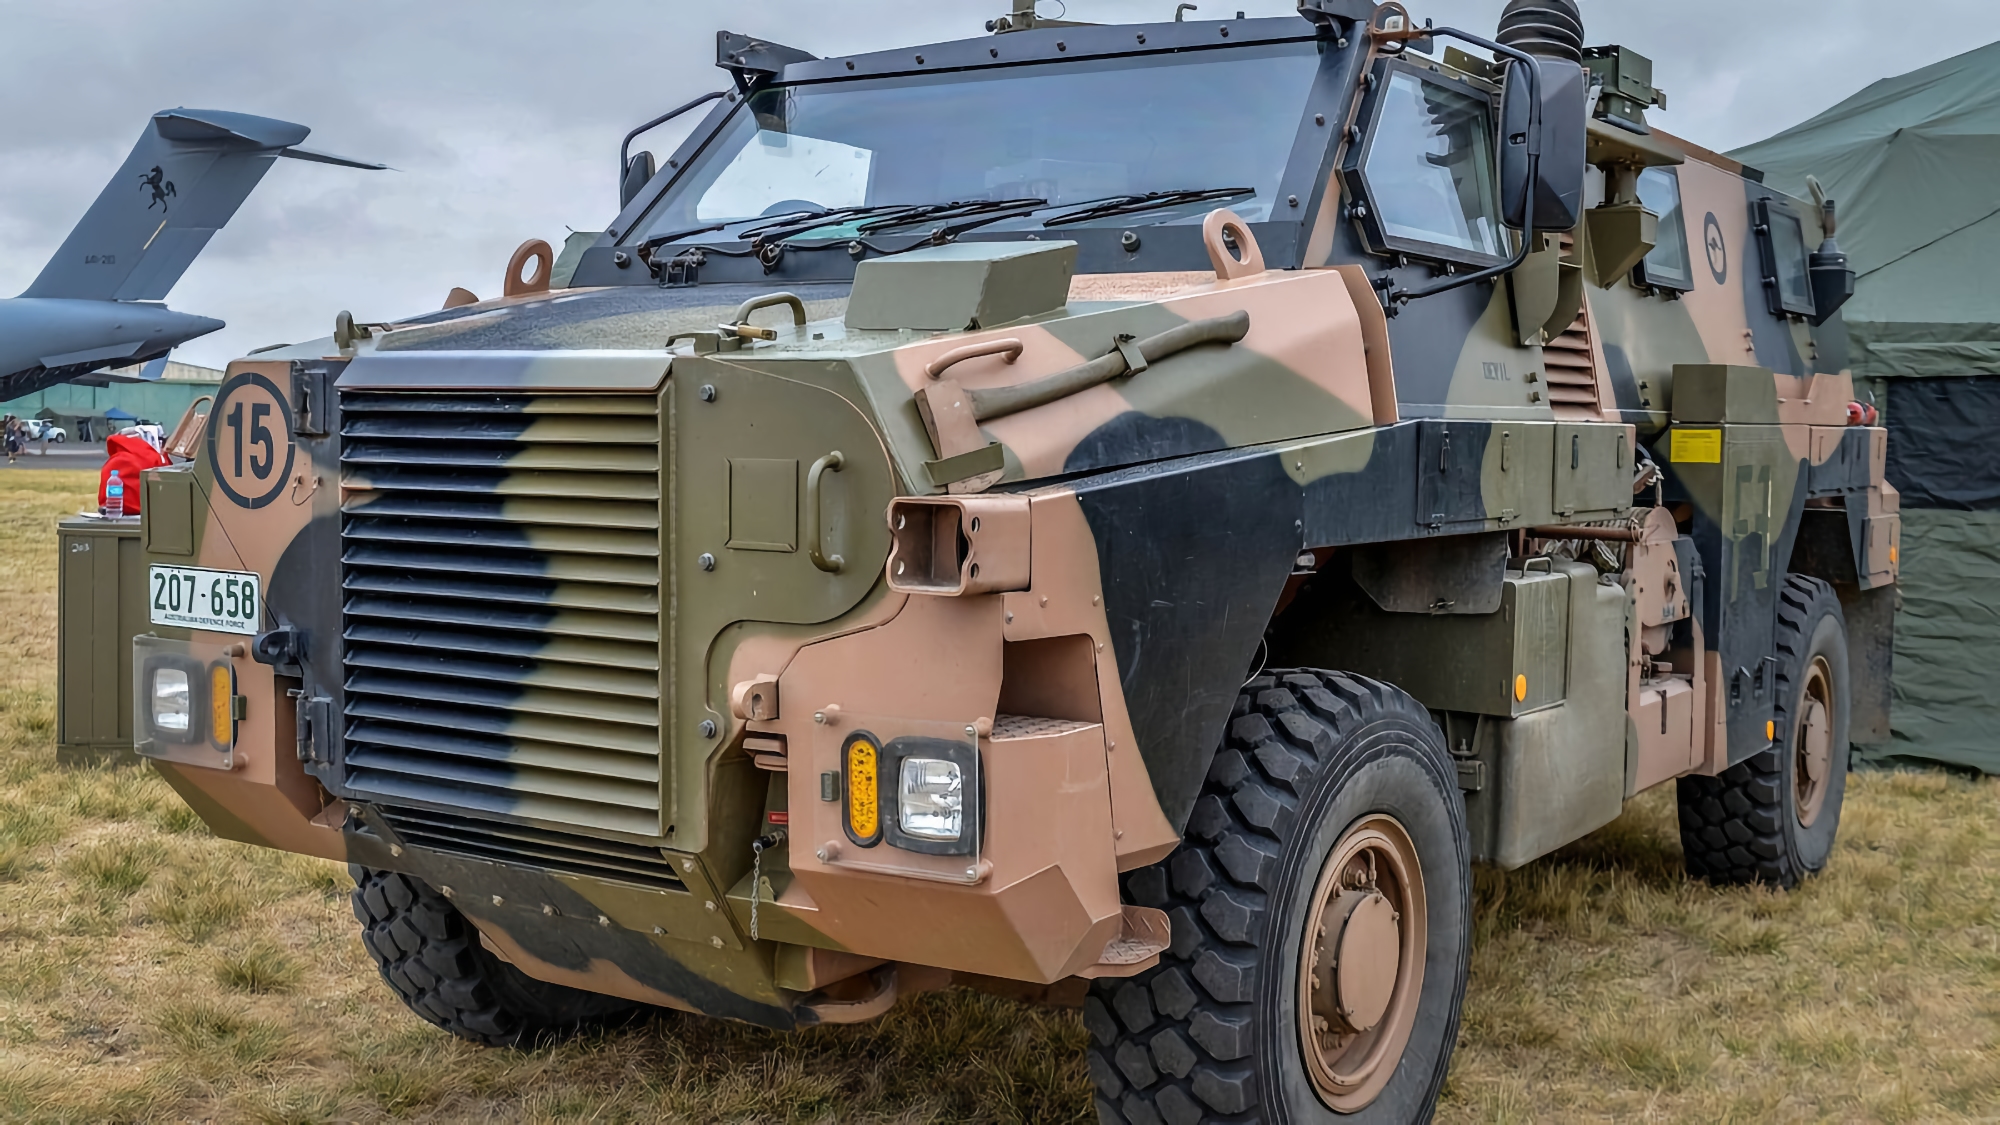 20 veicoli Bushmaster, 12 mezzi corazzati per il trasporto di personale M113 ed equipaggiamenti per le guardie di frontiera: cosa sarà incluso nel nuovo pacchetto di aiuti militari australiani all'Ucraina